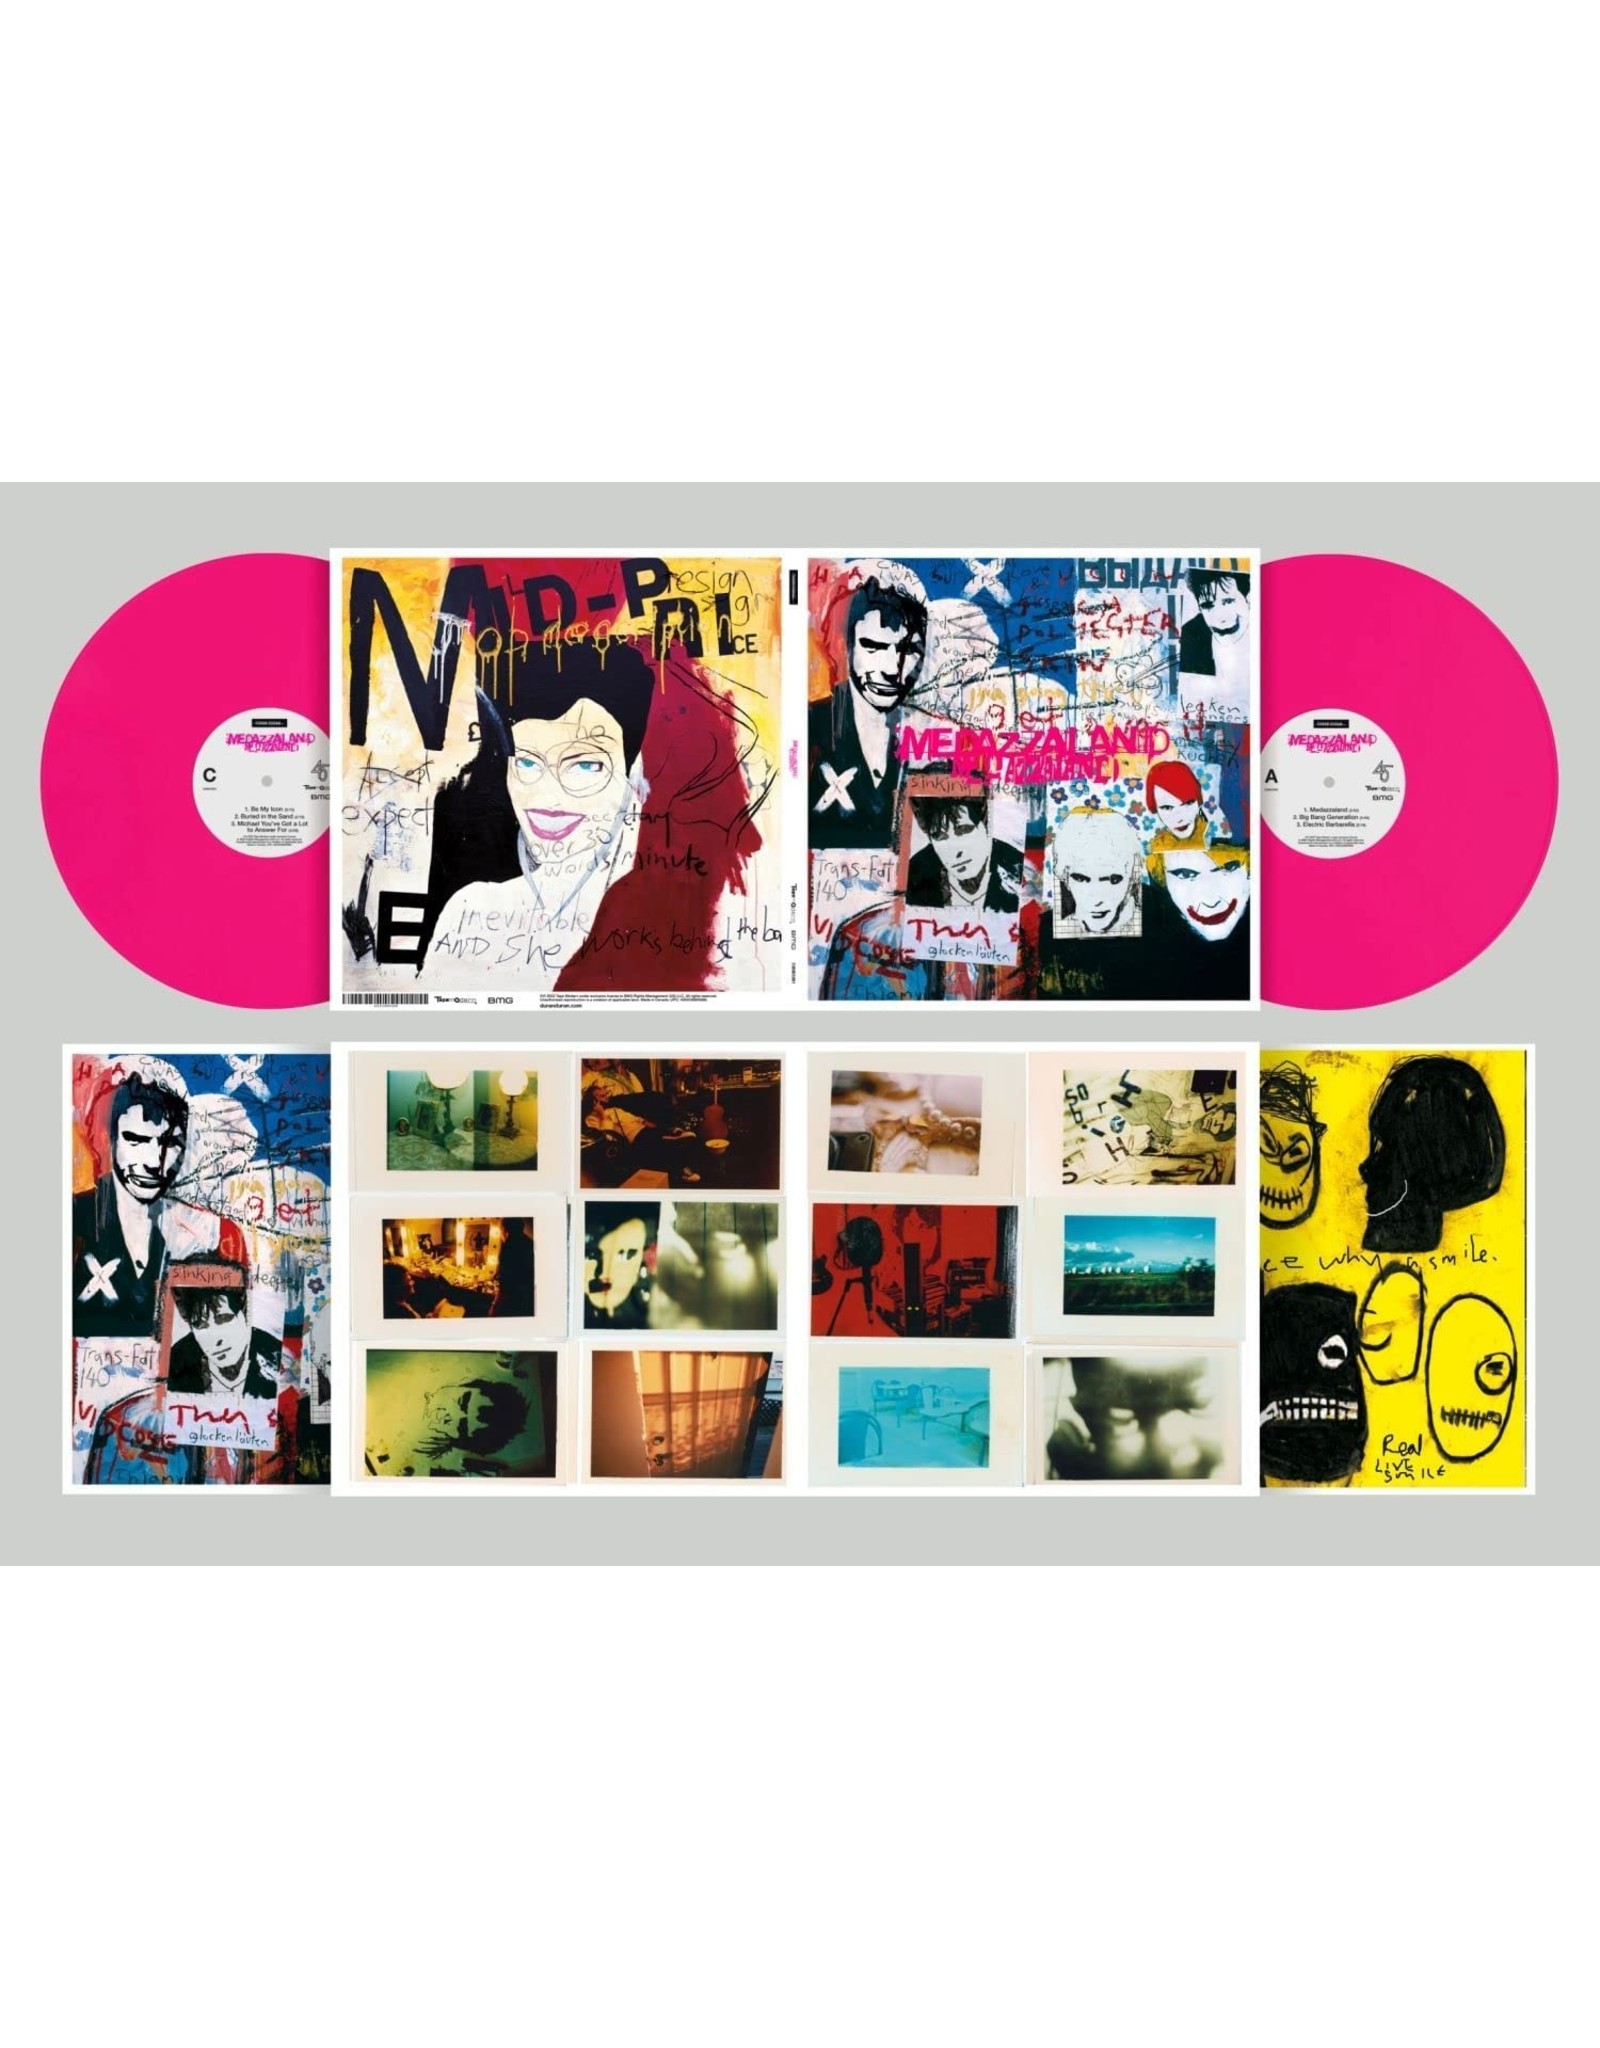 Duran Duran - Medazzaland (25th Anniversary) [Neon Pink Vinyl]